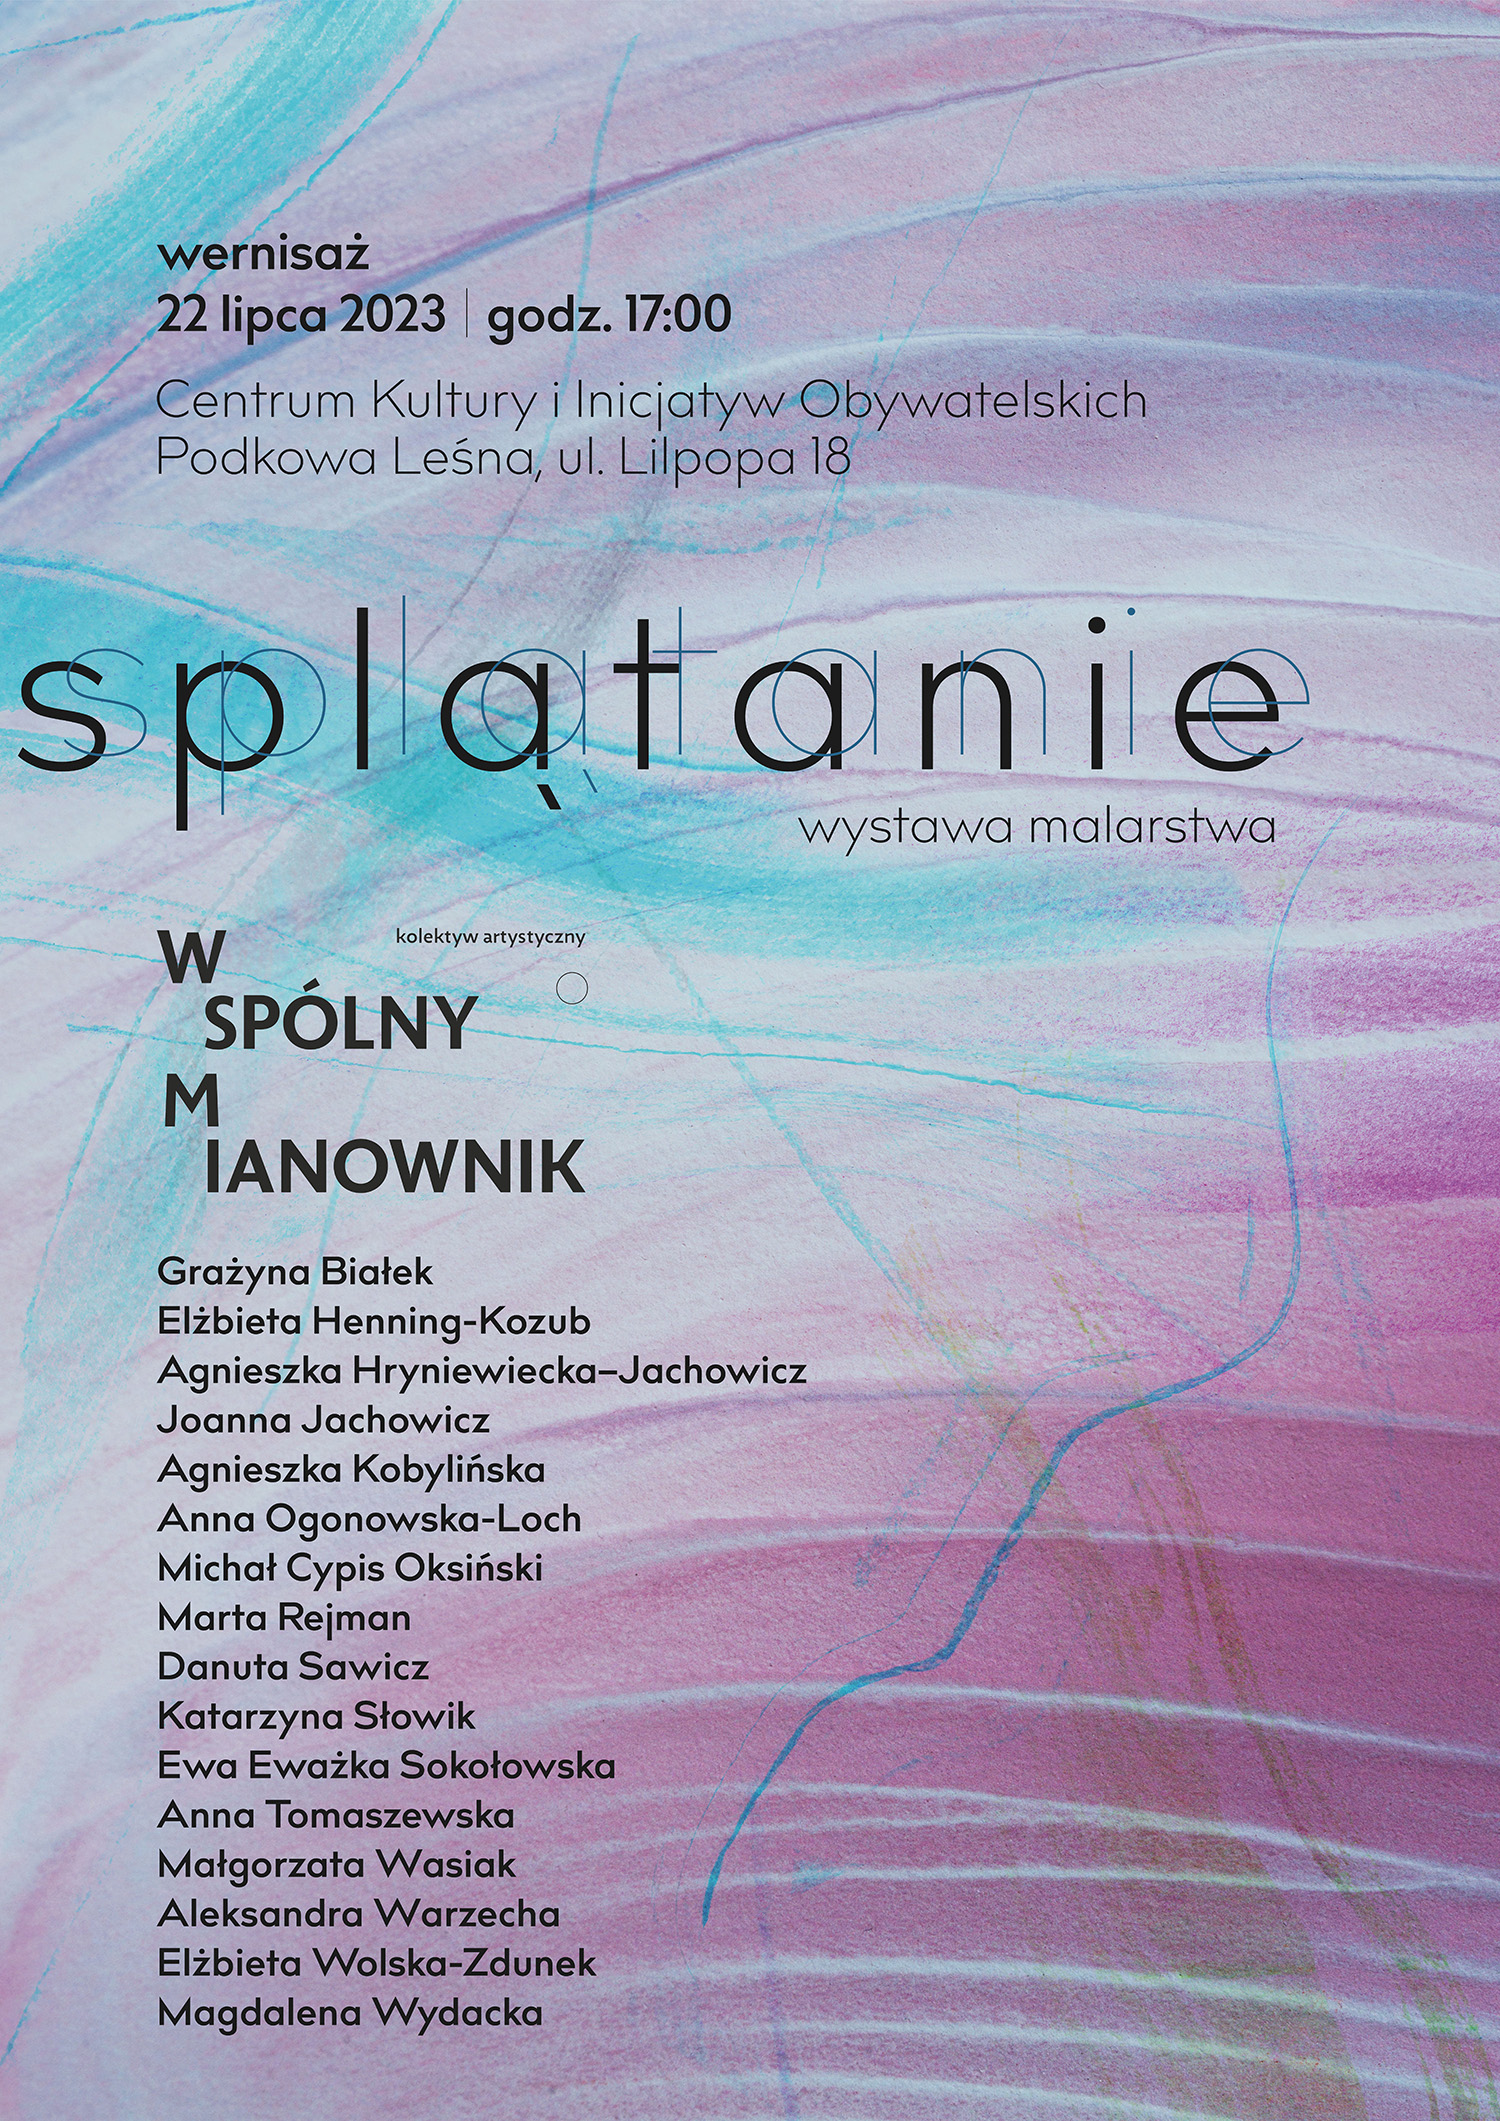 You are currently viewing SPLĄTANIE – wystawa kolektywu Wspólny Mianownik